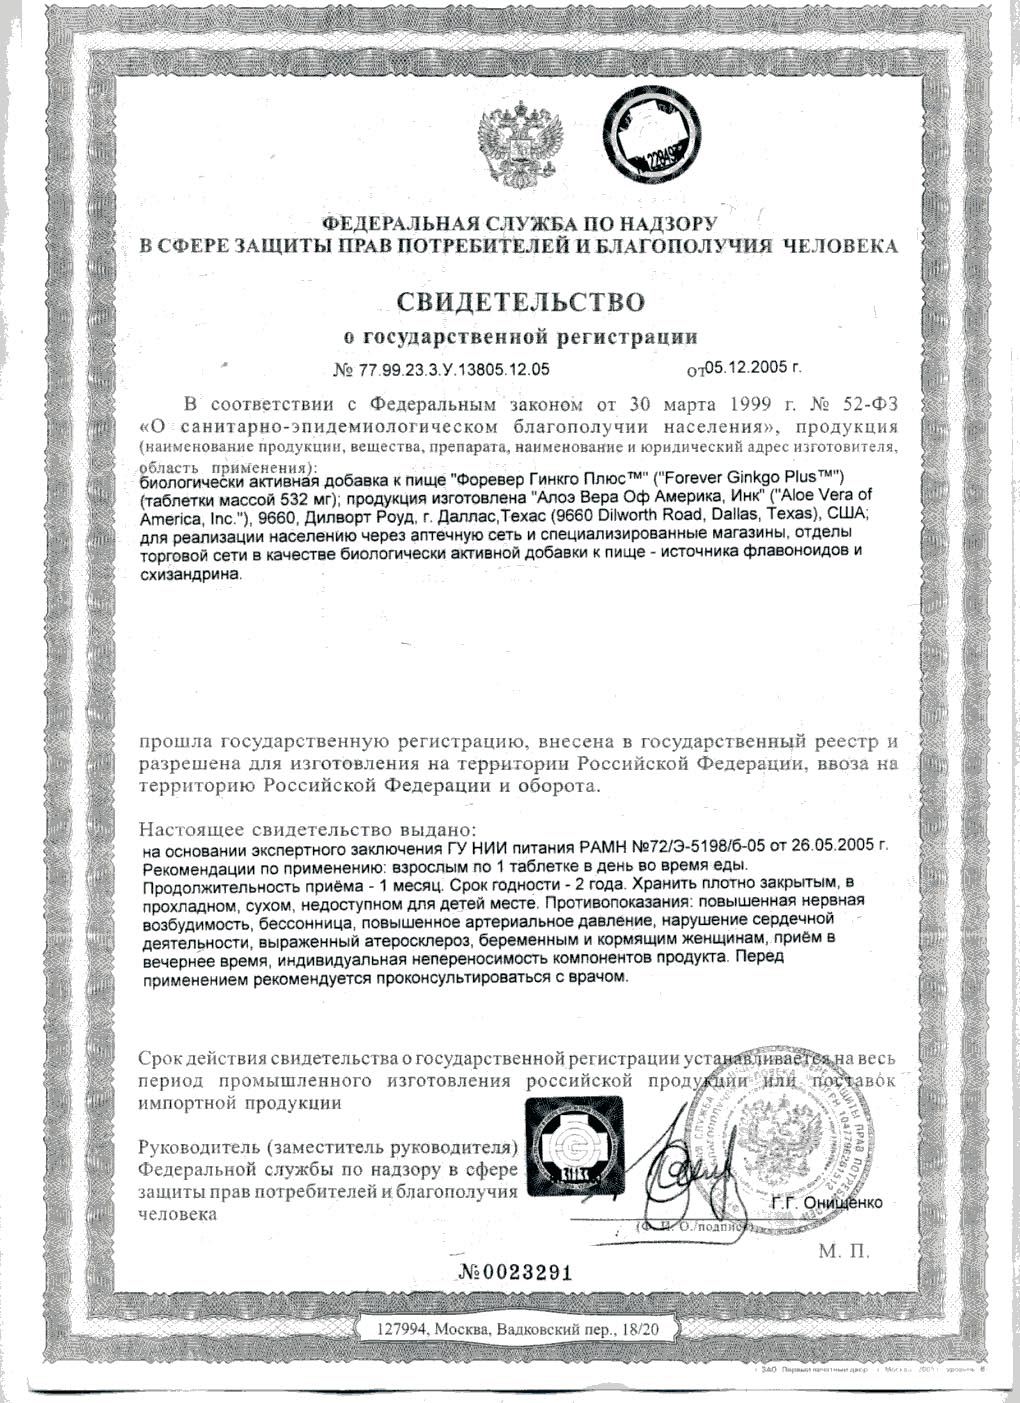 Сертификат Форевер Гинкго Плюс